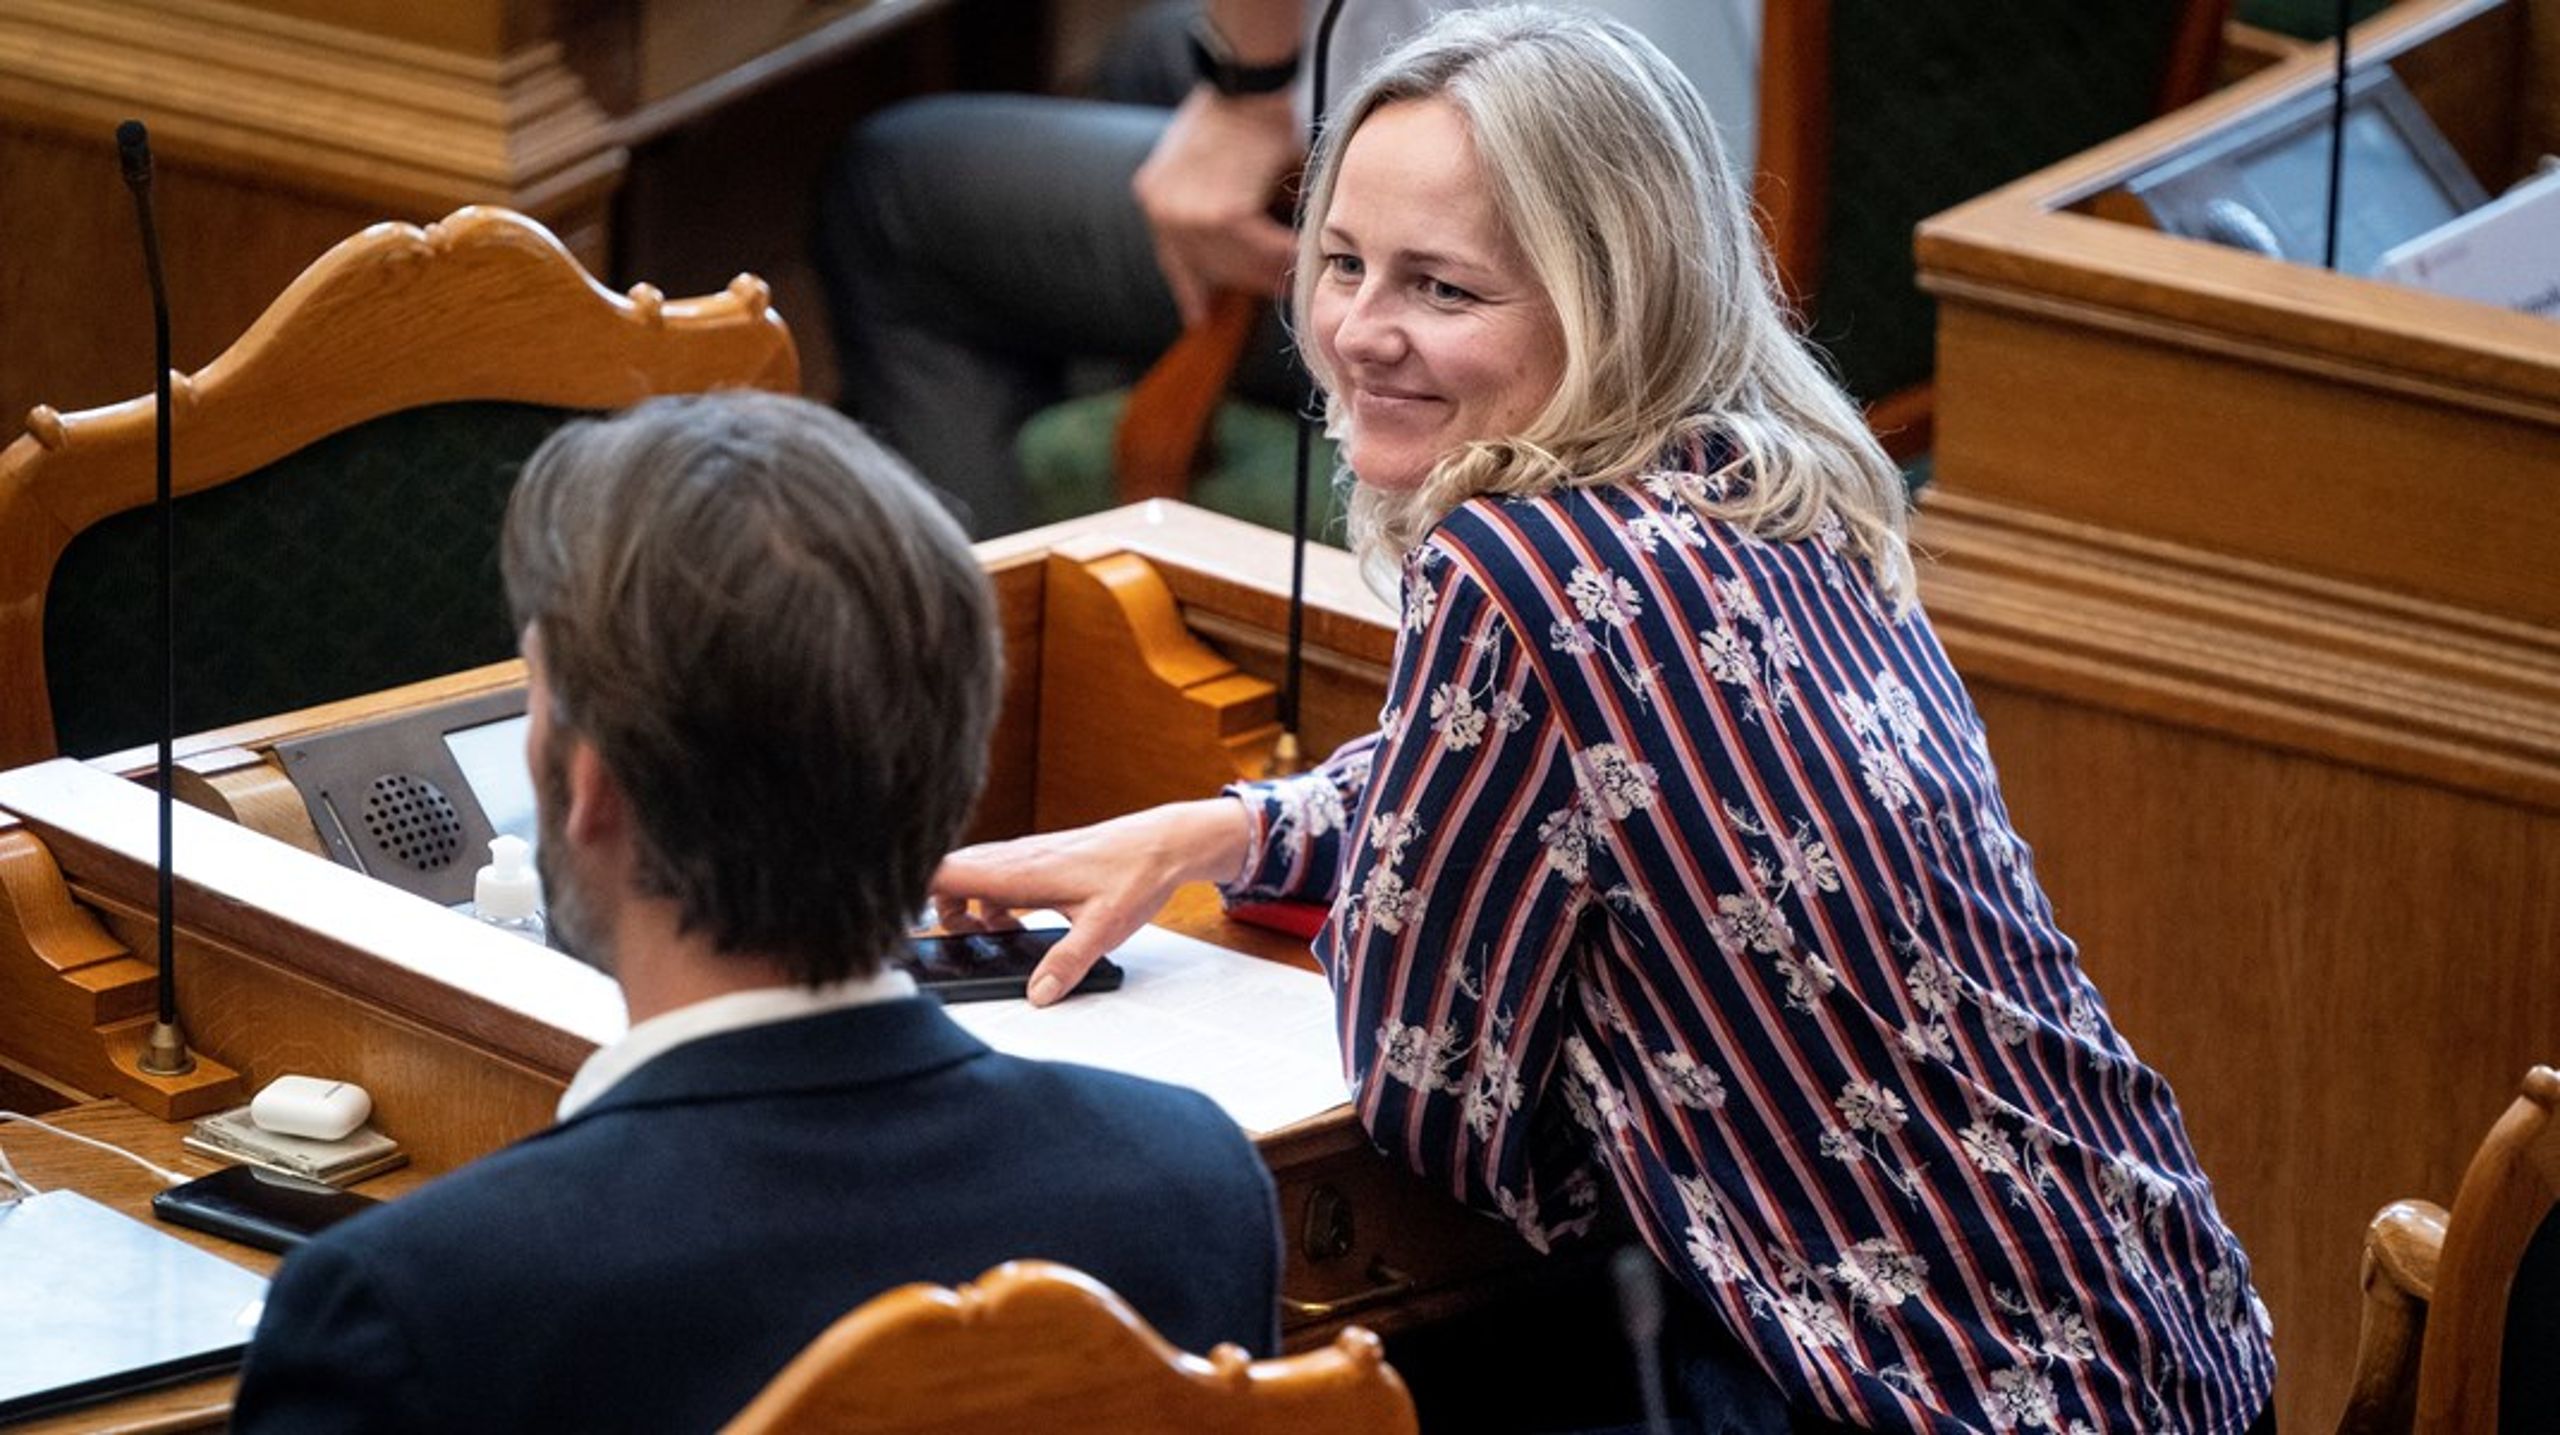 Kulturordfører Ida Auken fremhæver Socialdemokratiet som det eneste parti på Christiansborg, som har blik for sammenhængen mellem såkaldt finkultur og folkelighed.